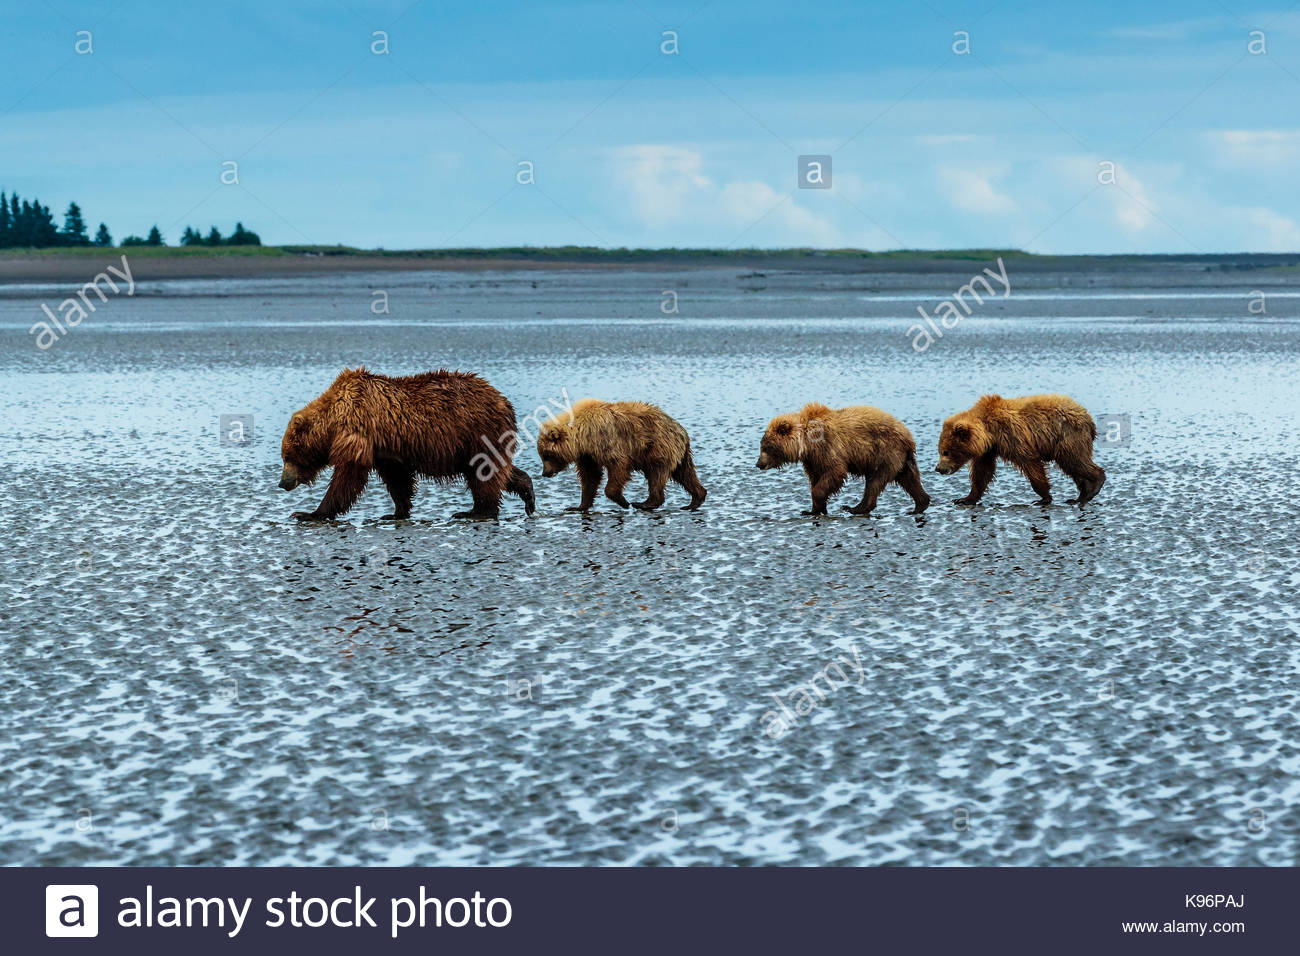 L'ours brun côtières, Ursus arctos, marchant sur un platin après avoir fouillé et les palourdes à Sliver Salmon Creek dans la région de Lake Clark National Park, Alaska. Banque D'Images